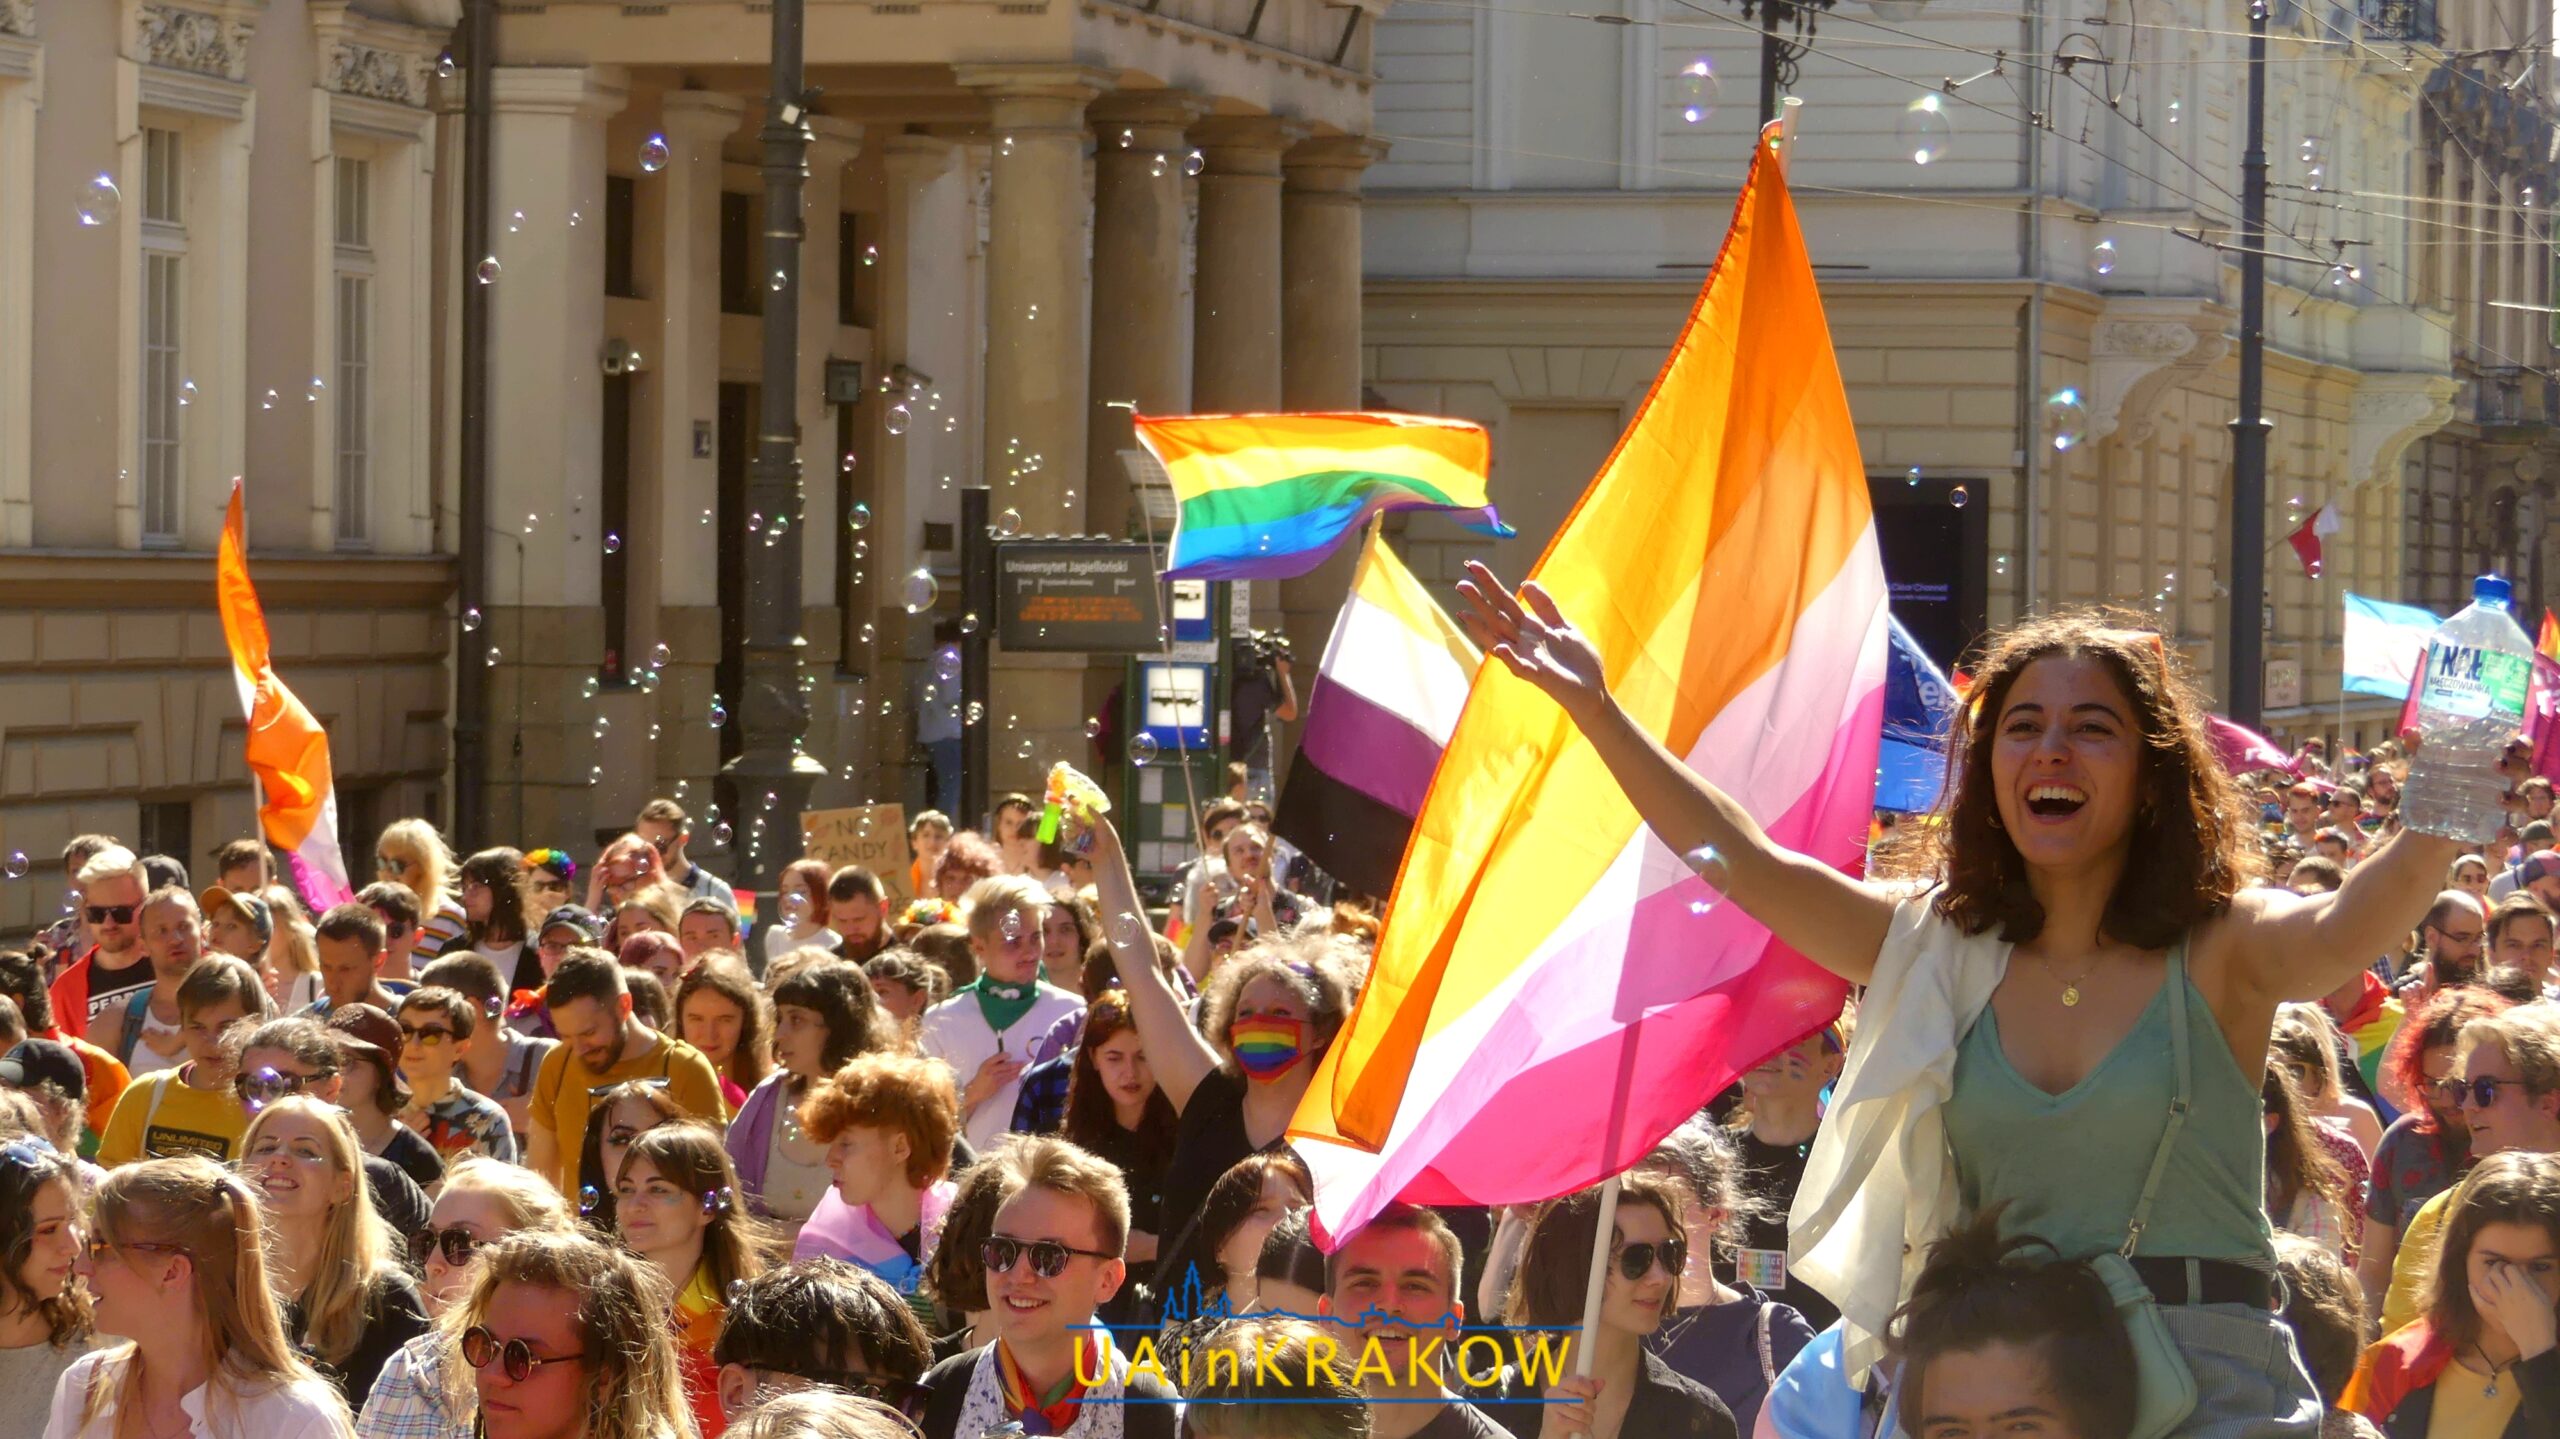 Кохання, рівність, толерантність: як пройшов Марш рівності в Кракові [ФОТО] 18 scaled